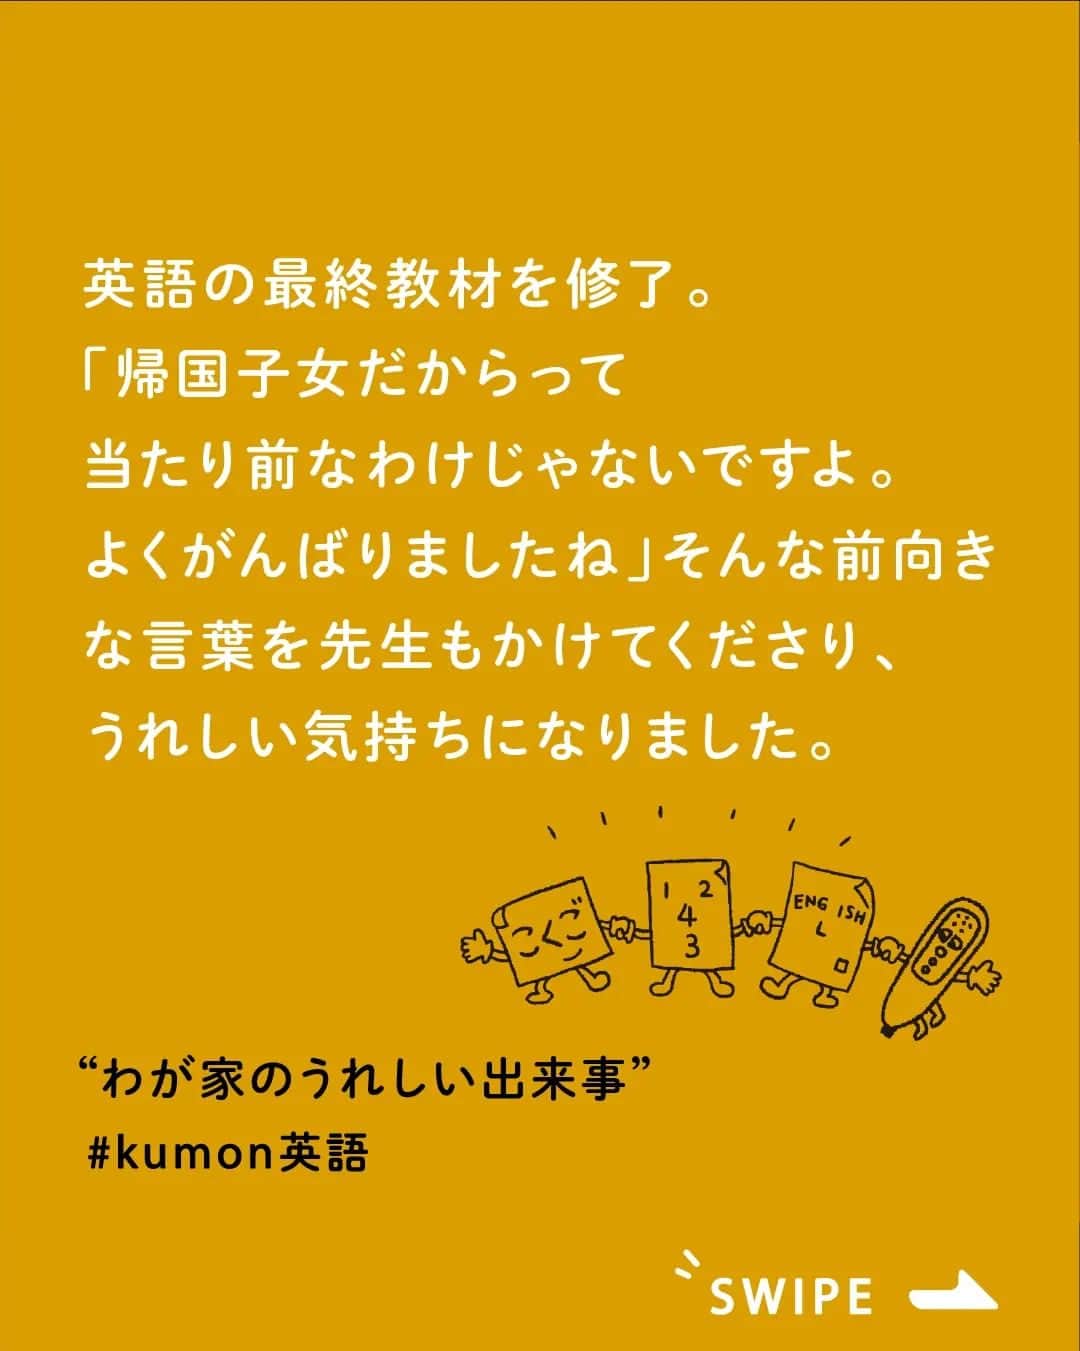 KUMON（公文式・くもん）【オフィシャル】のインスタグラム：「KUMONって国語や算数のイメージがあるけど、英語ってどうなの❔ そんな声にお応えして、今日はKUMONで英語を学習している方をご紹介します🤗 ⁣  ▼1枚目　@ayako.inoue さん - - - - - - - - - KUMON英語修了と、２つの盾。  娘、昨年末にKUMONの英語の最終教材を修了しました。  小学4年3月から習い出したので、 2年弱の取り組みでした。  左側は【最終教材到達賞】の盾。 教室で最終教材のテストを クリアしたらもらえるものです。  もう1つの盾は 【公文英語最終教材修了合格証】  試験会場に行って最終教材修了テストに 合格するといただけます。  最終教材修了テストは、 小学生は多分いなくて、 中高生に交じっての試験だった様子。  しかもバスケの公式戦と ダブルブッキングしていたので、 娘はジャージ姿で受験しました、笑  その上、終了時間を待たずに出てくるという ハードスケジュール。  その割には、大問6まである試験の 大問1−4は全問正解だったので、  焦る環境ではあったけれど、 本人なりに集中できていたのだと思います。  「帰国子女だからって当たり前なわけじゃないですよ。 よくがんばりましたね」  そんな、前向きな言葉を KUMONの先生もかけてくださり、 とてもうれしい気持ちになりました。  帰国子女だから英語はできて当たり前。 ではなく、帰国してからも ちゃんと学習したからこその結果。  がんばった娘を、 ちゃんとたたえてあげなきゃな、 そう感じました。  今は、研究コースの教材に取り組んでいて、 ヘミングウェイを読んでいます。  英語だけでなく日本語訳も難しいみたいだけど、 読書しない娘なので、 いろんな文章に触れる良いチャンスに なっているのかなと思います。 - - - - - - - - -  ▼2枚目　@ama.0421 さん - - - - - - - - - 2023.2.22  KUMONの英語やりたい！と言われて 開始を待ってもらってました。  年中4月　国語開始、3月算数開始で 一年に１教科ずつしてきたので次は年長の3月から。  お待たせしましたー✨  お月謝が気になるところだけど👛💔  先生が大学受験までに英検®準一級とれたら楽だよ❣️ 英検®取るためには早めに始めるに越したことはない❕  KUMONの英語はいいよ！とずっと言われてて やっと体験学習1回目を終えて来週2回目。  確かに音読してる子の発音がいいし 英検®とってる子も多いみたい。  私もいっしょにゆるゆるとお勉強しよ〜😂  最初はE-Pencilから流れるネイティヴスピーカーの 発音を真似して言うのみで、プリントがないから宿題も負担にならないし、大丈夫かな😃 - - - - - - - - - ※英検®は、公益財団法人 日本英語検定協会の登録商標です。 ※このコンテンツは、公益財団法人 日本英語検定協会の承認や推奨、その他の検討を受けたものではありません ⁣  素敵なご投稿ありがとうございました！✨ 前向きに英語学習に取り組んでいる様子が伝わってきました♪  ───────────  できた、たのしい、KUMONの毎日♪ KUMON公式アカウントでは、「 #kumonfriends 」のハッシュタグを付けてくださった投稿をご紹介しています📷 みなさんも、ぜひ投稿してみてくださいね😊  ※投稿写真は、公式Instagramアカウントの投稿やKUMON BUZZ PLACE WEBサイトにてトリミング、加工の上、使用させていただく場合がございます。 ※画像や動画の無断転載はお断りします。 ※ダイレクトメッセージへの返信はいたしません。 ⁣  #くもん #くもんいくもん #やっててよかった公文式 #公文 #公文式 #くもん頑張り隊 #くもんの宿題 #公文英語 #英語 #えいご #子ども英語 #学習習慣 #学習 #学力向上 #子育てママ #子育て日記 #成長記録 #家庭学習 #家庭教育 #英検 #小学生 #習い事 #宿題 #子どものいる暮らし #子どもと暮らす #kumon #kumonkids #kumontime #くもんママと繋がりたい」